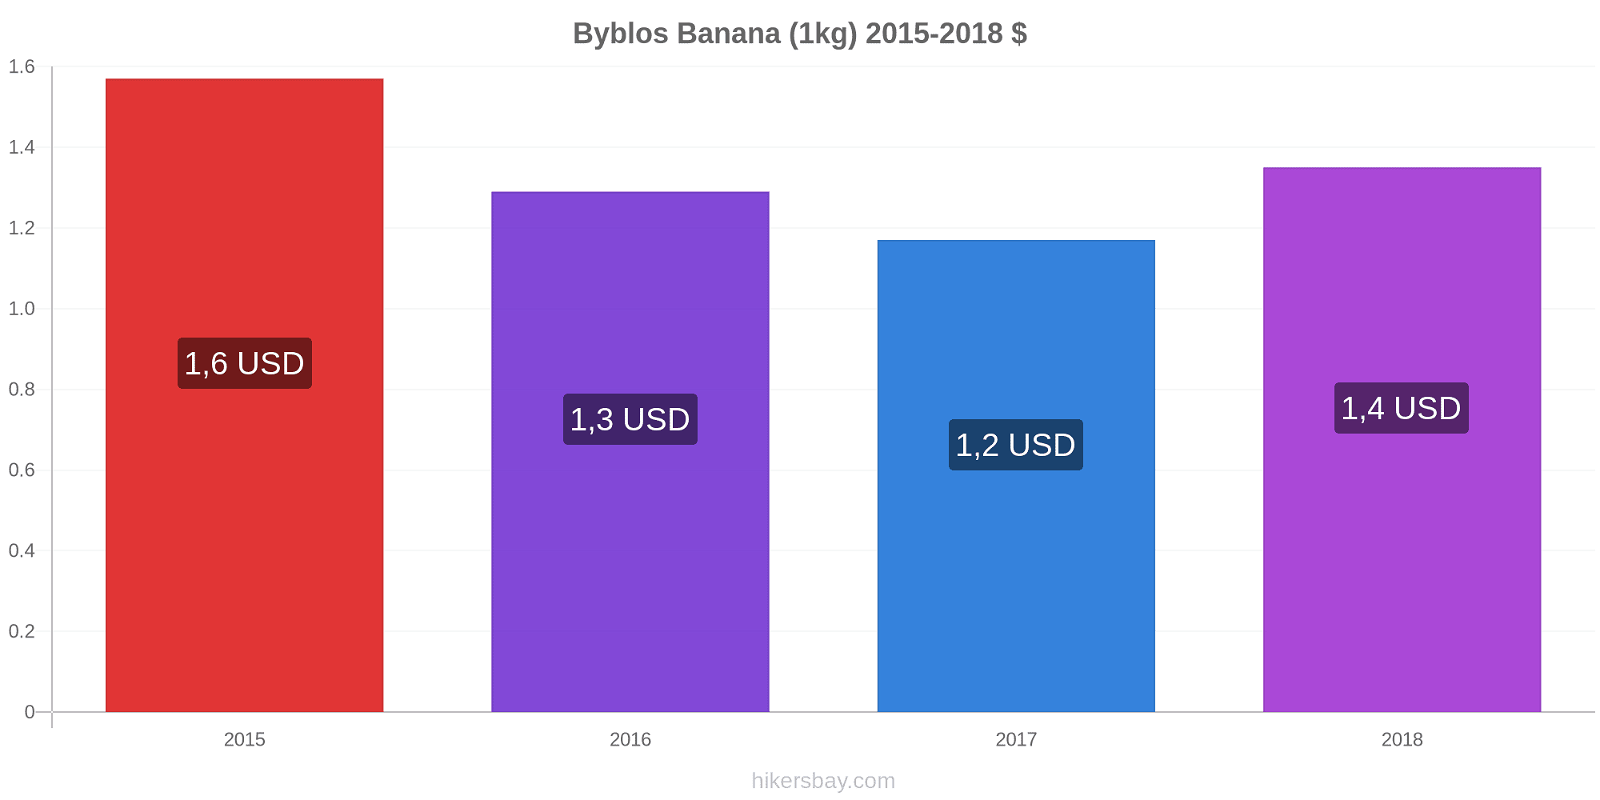 Byblos modificări de preț Banana (1kg) hikersbay.com